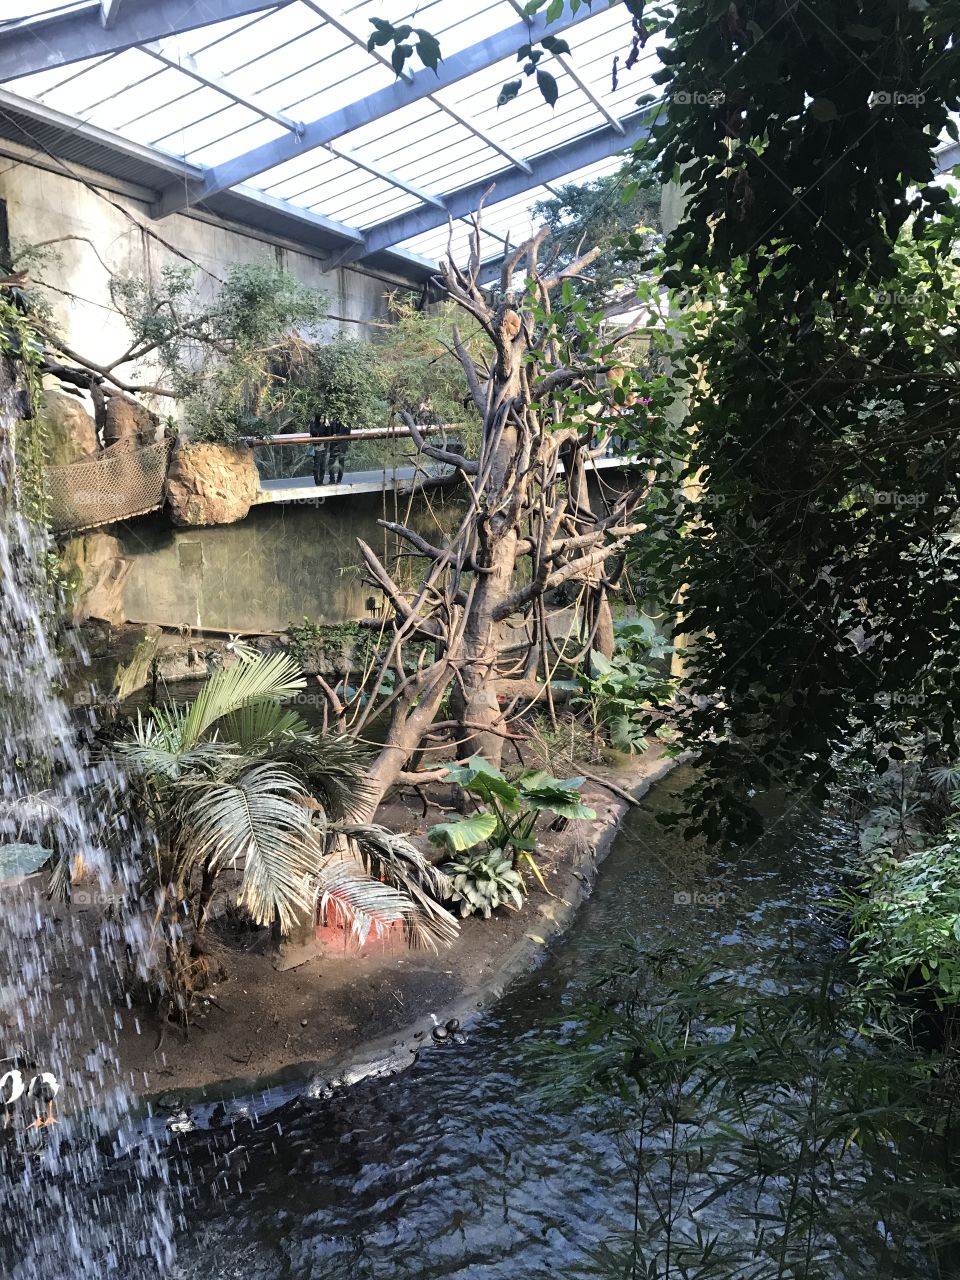 Henry Doorly Zoo and Aquarium in Omaha, Nebraska tropical rainforest exhibit 